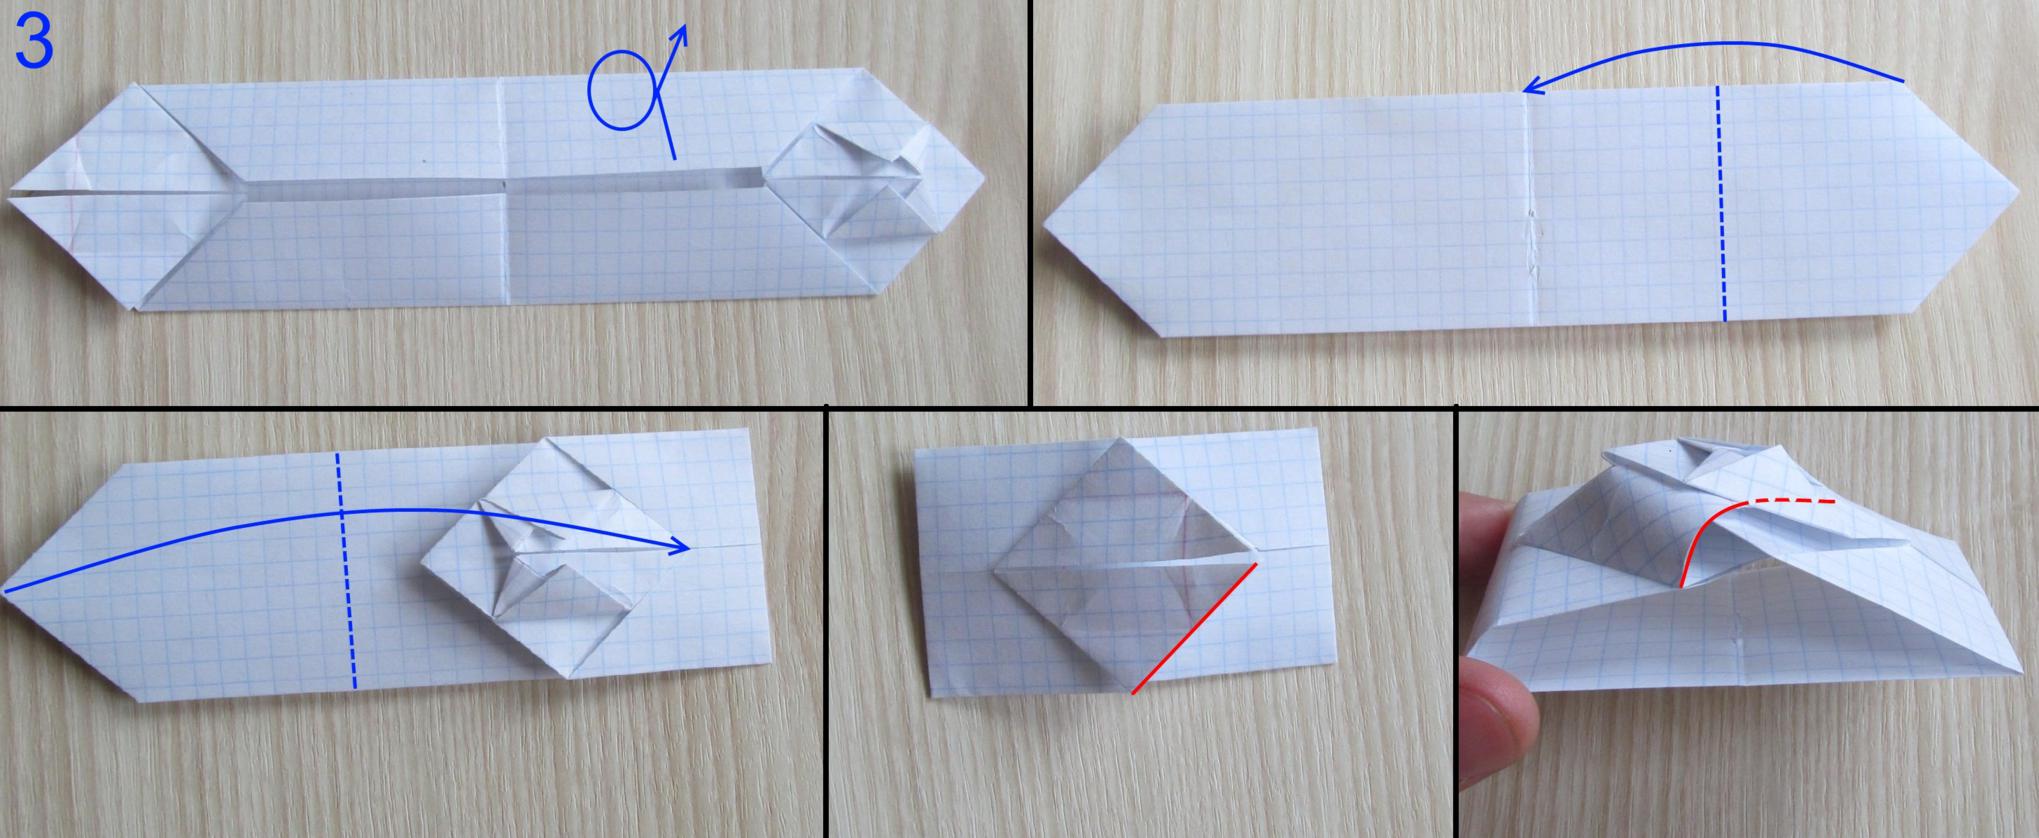 Оригами из бумаги танк: мастер-класс как сделать игрушку из бумаги для мальчиков